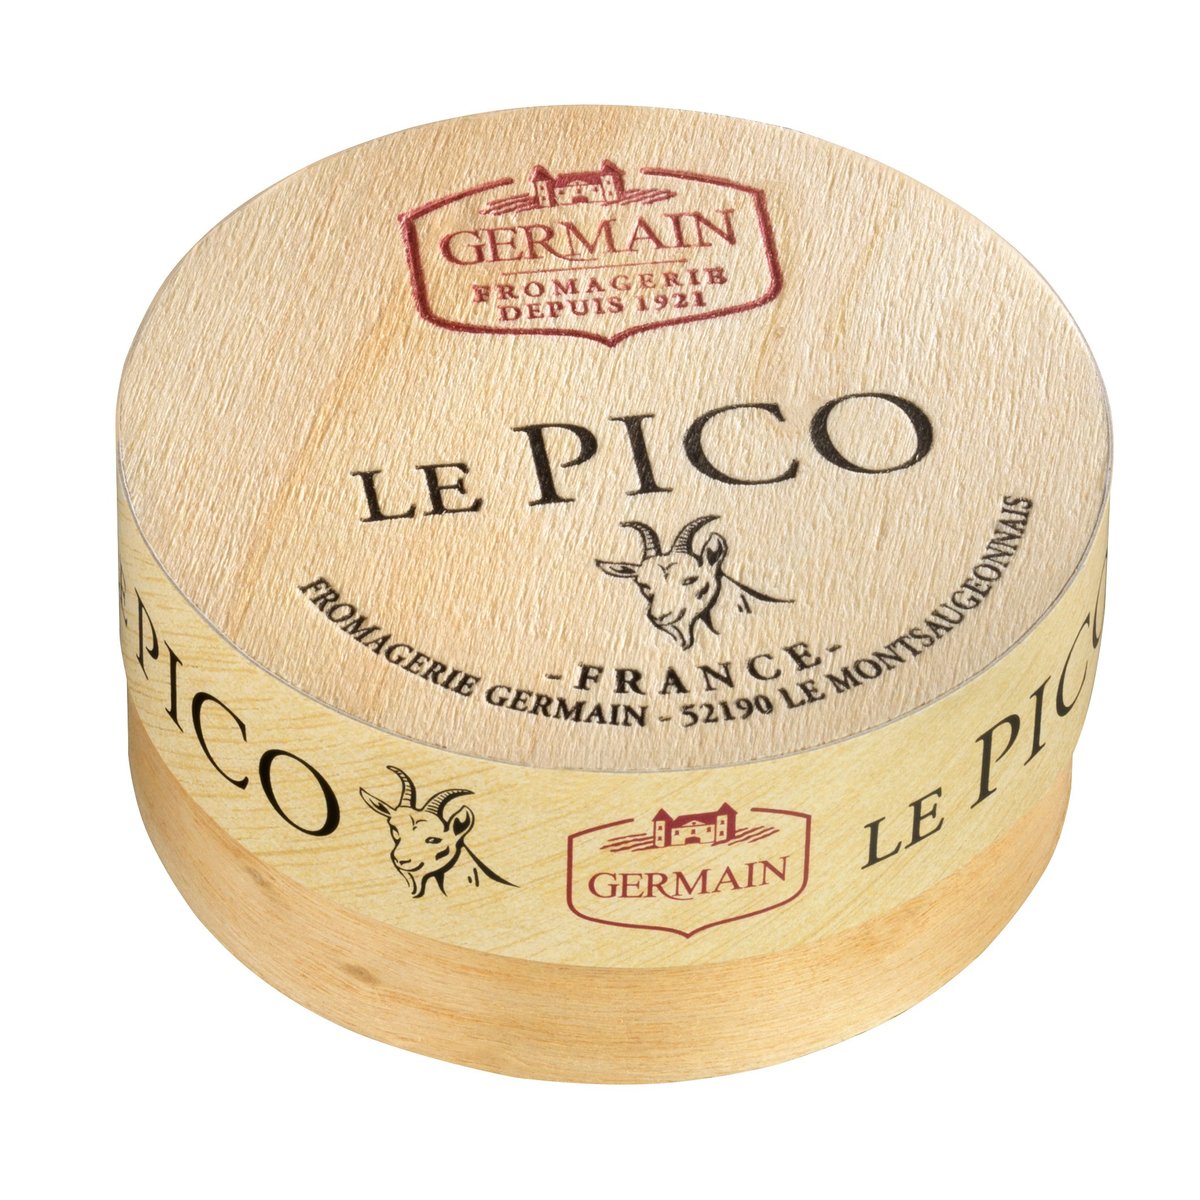 Germain Le Pico kozí sýr